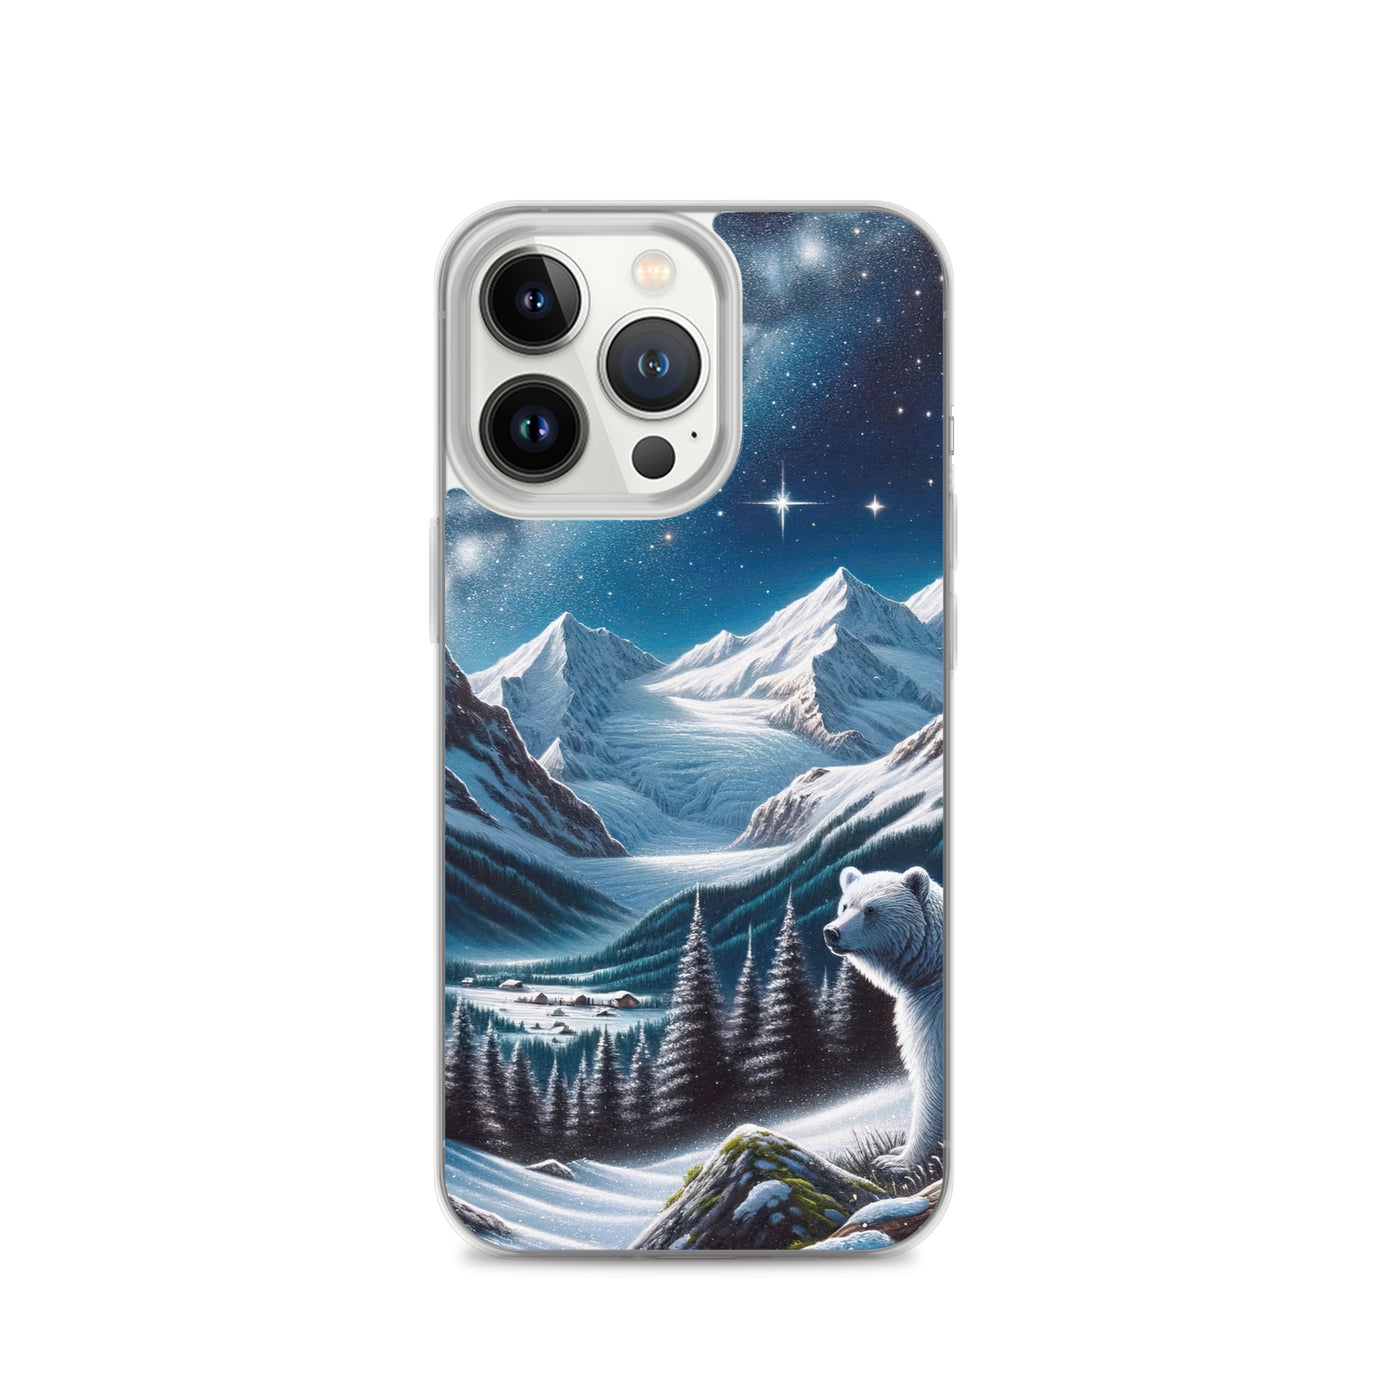 Sternennacht und Eisbär: Acrylgemälde mit Milchstraße, Alpen und schneebedeckte Gipfel - iPhone Schutzhülle (durchsichtig) camping xxx yyy zzz iPhone 13 Pro